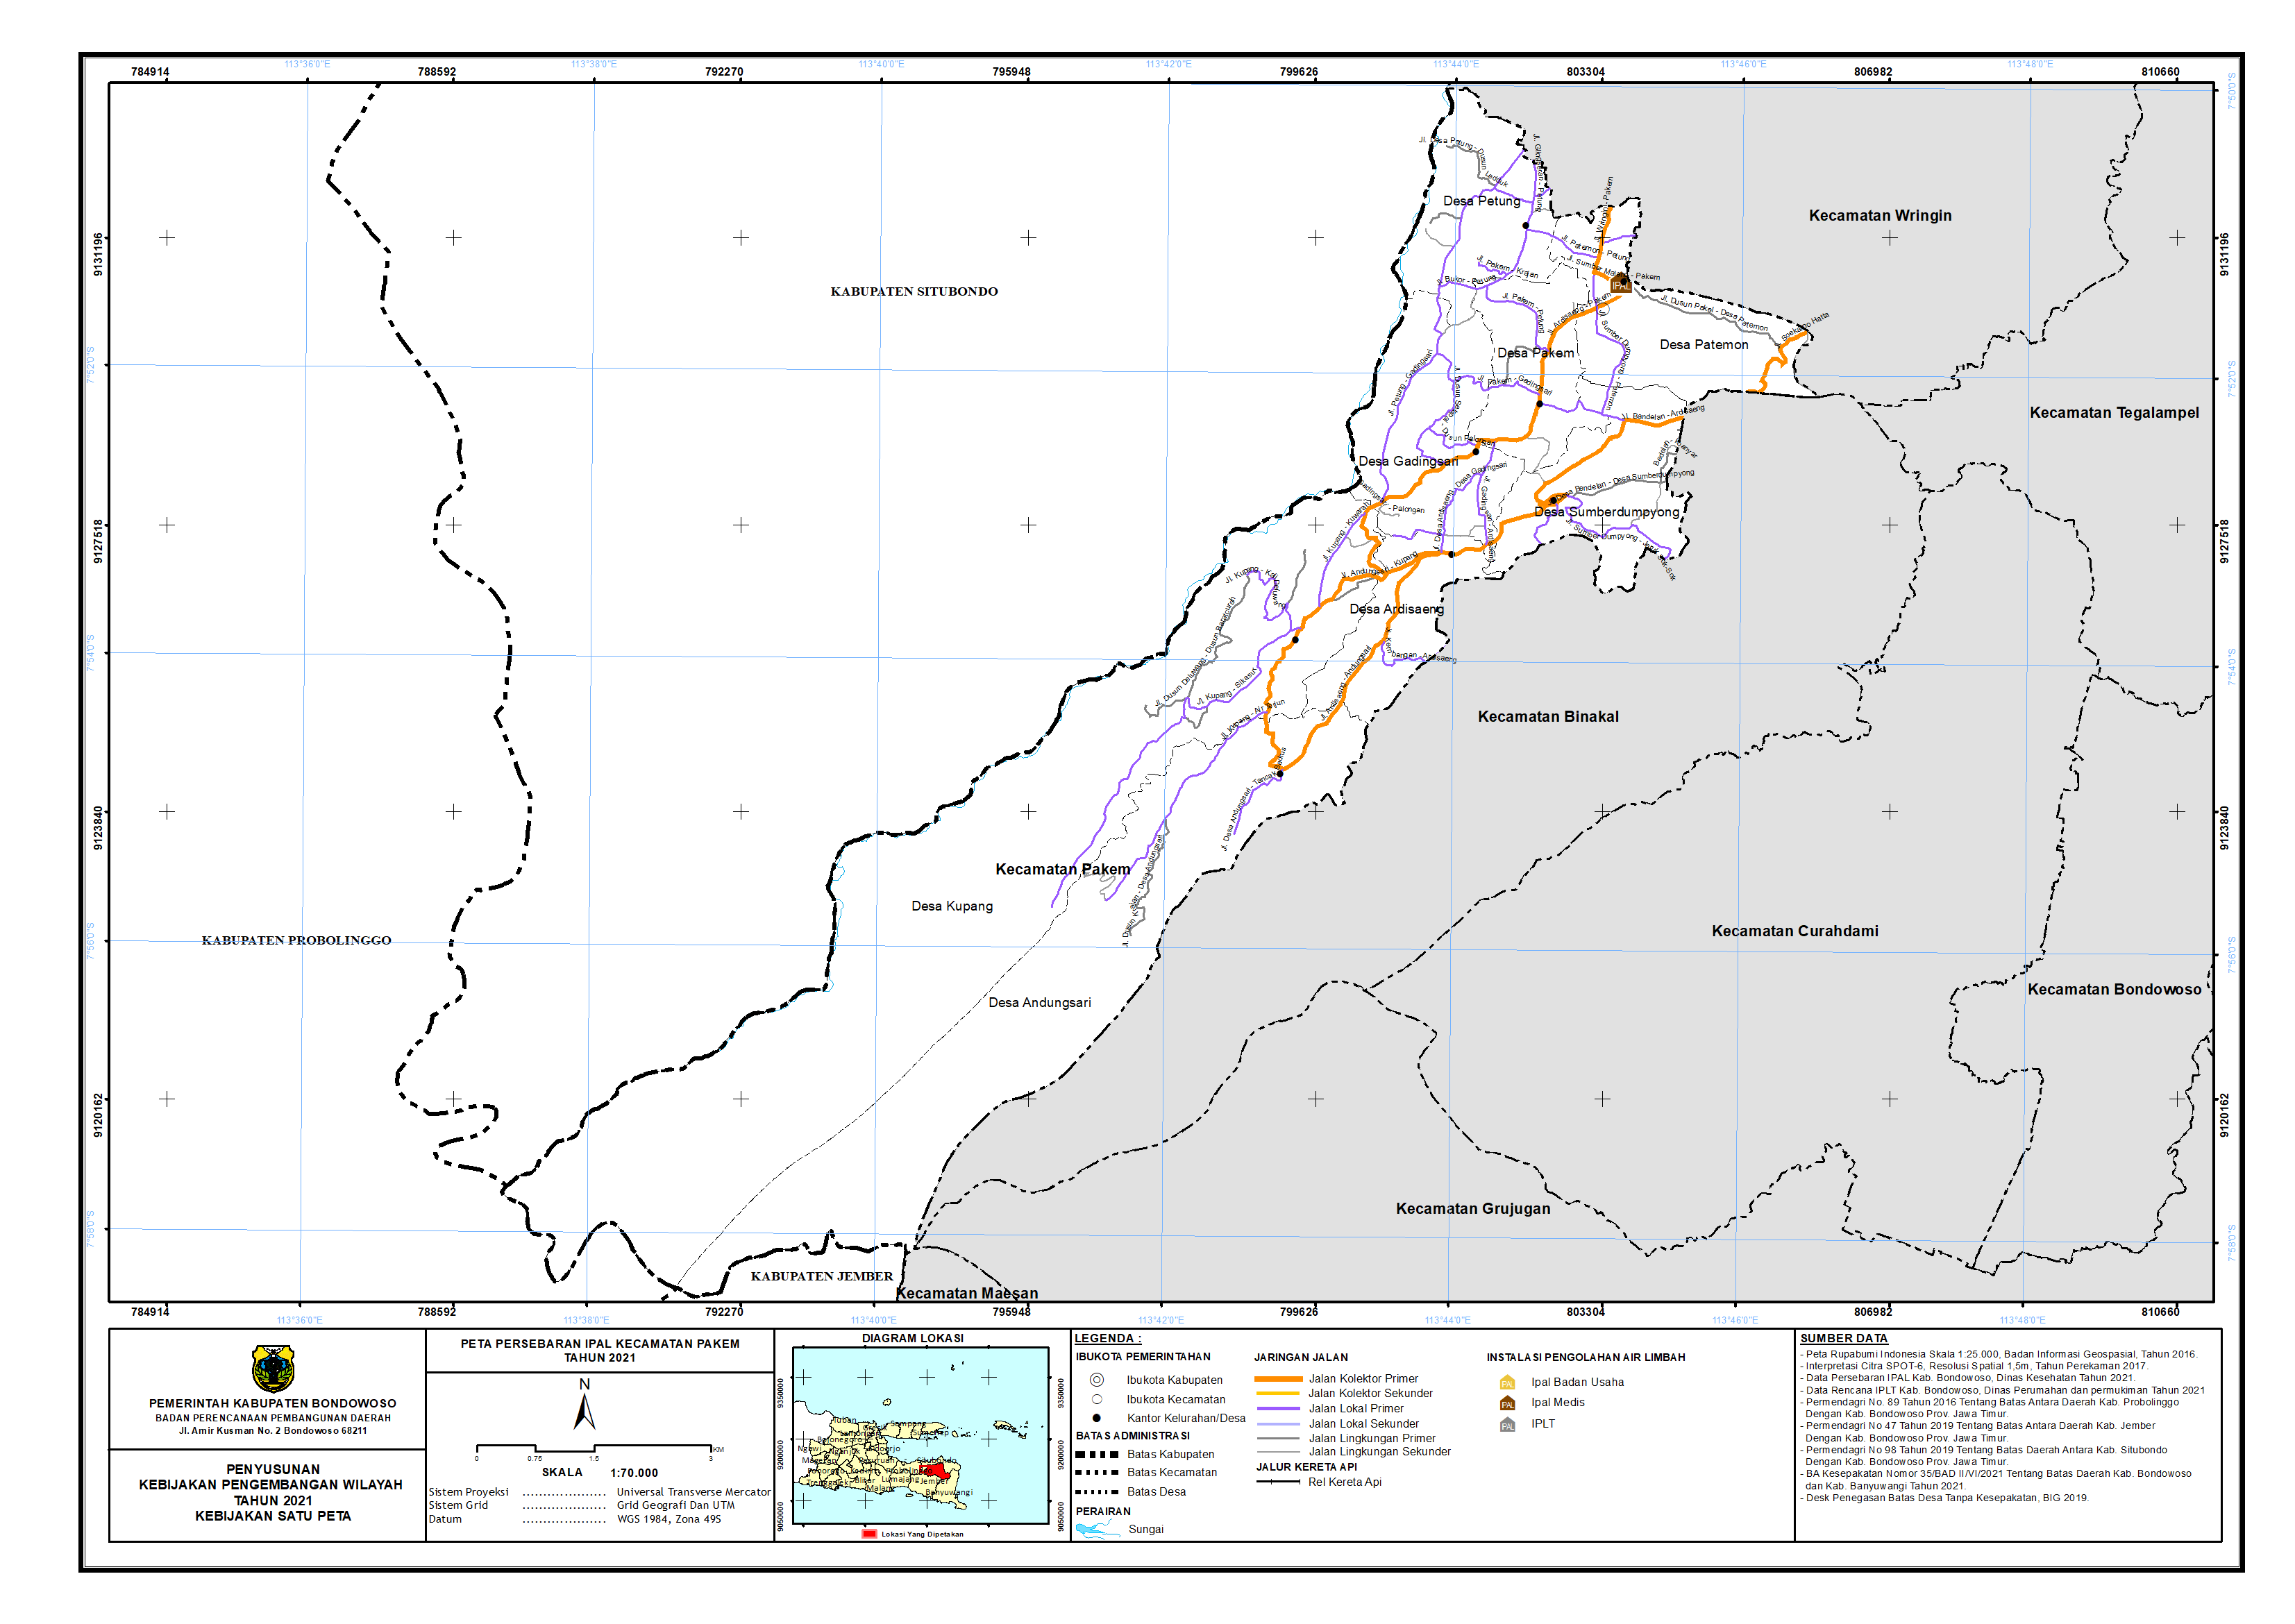 Peta Persebaran IPAL Kecamatan Pakem.png